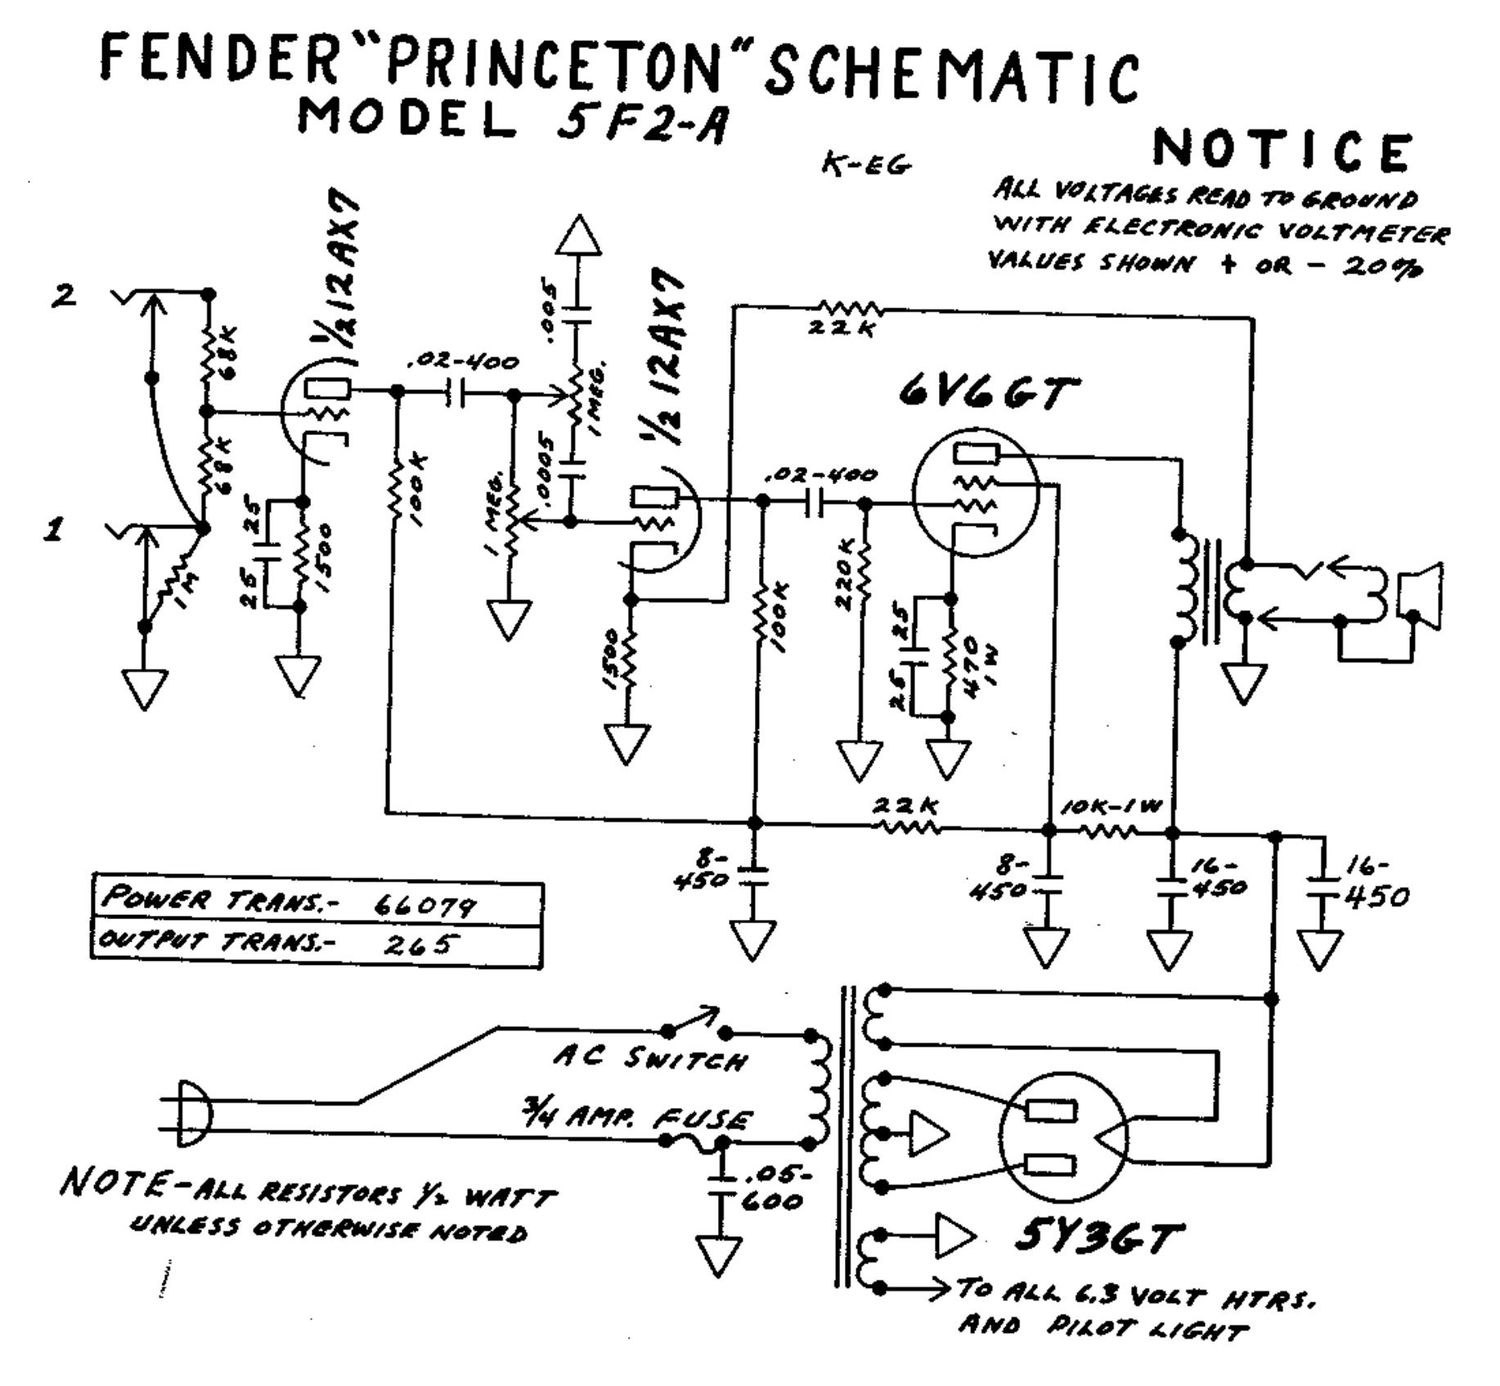 fender princeton 5f2a schematic